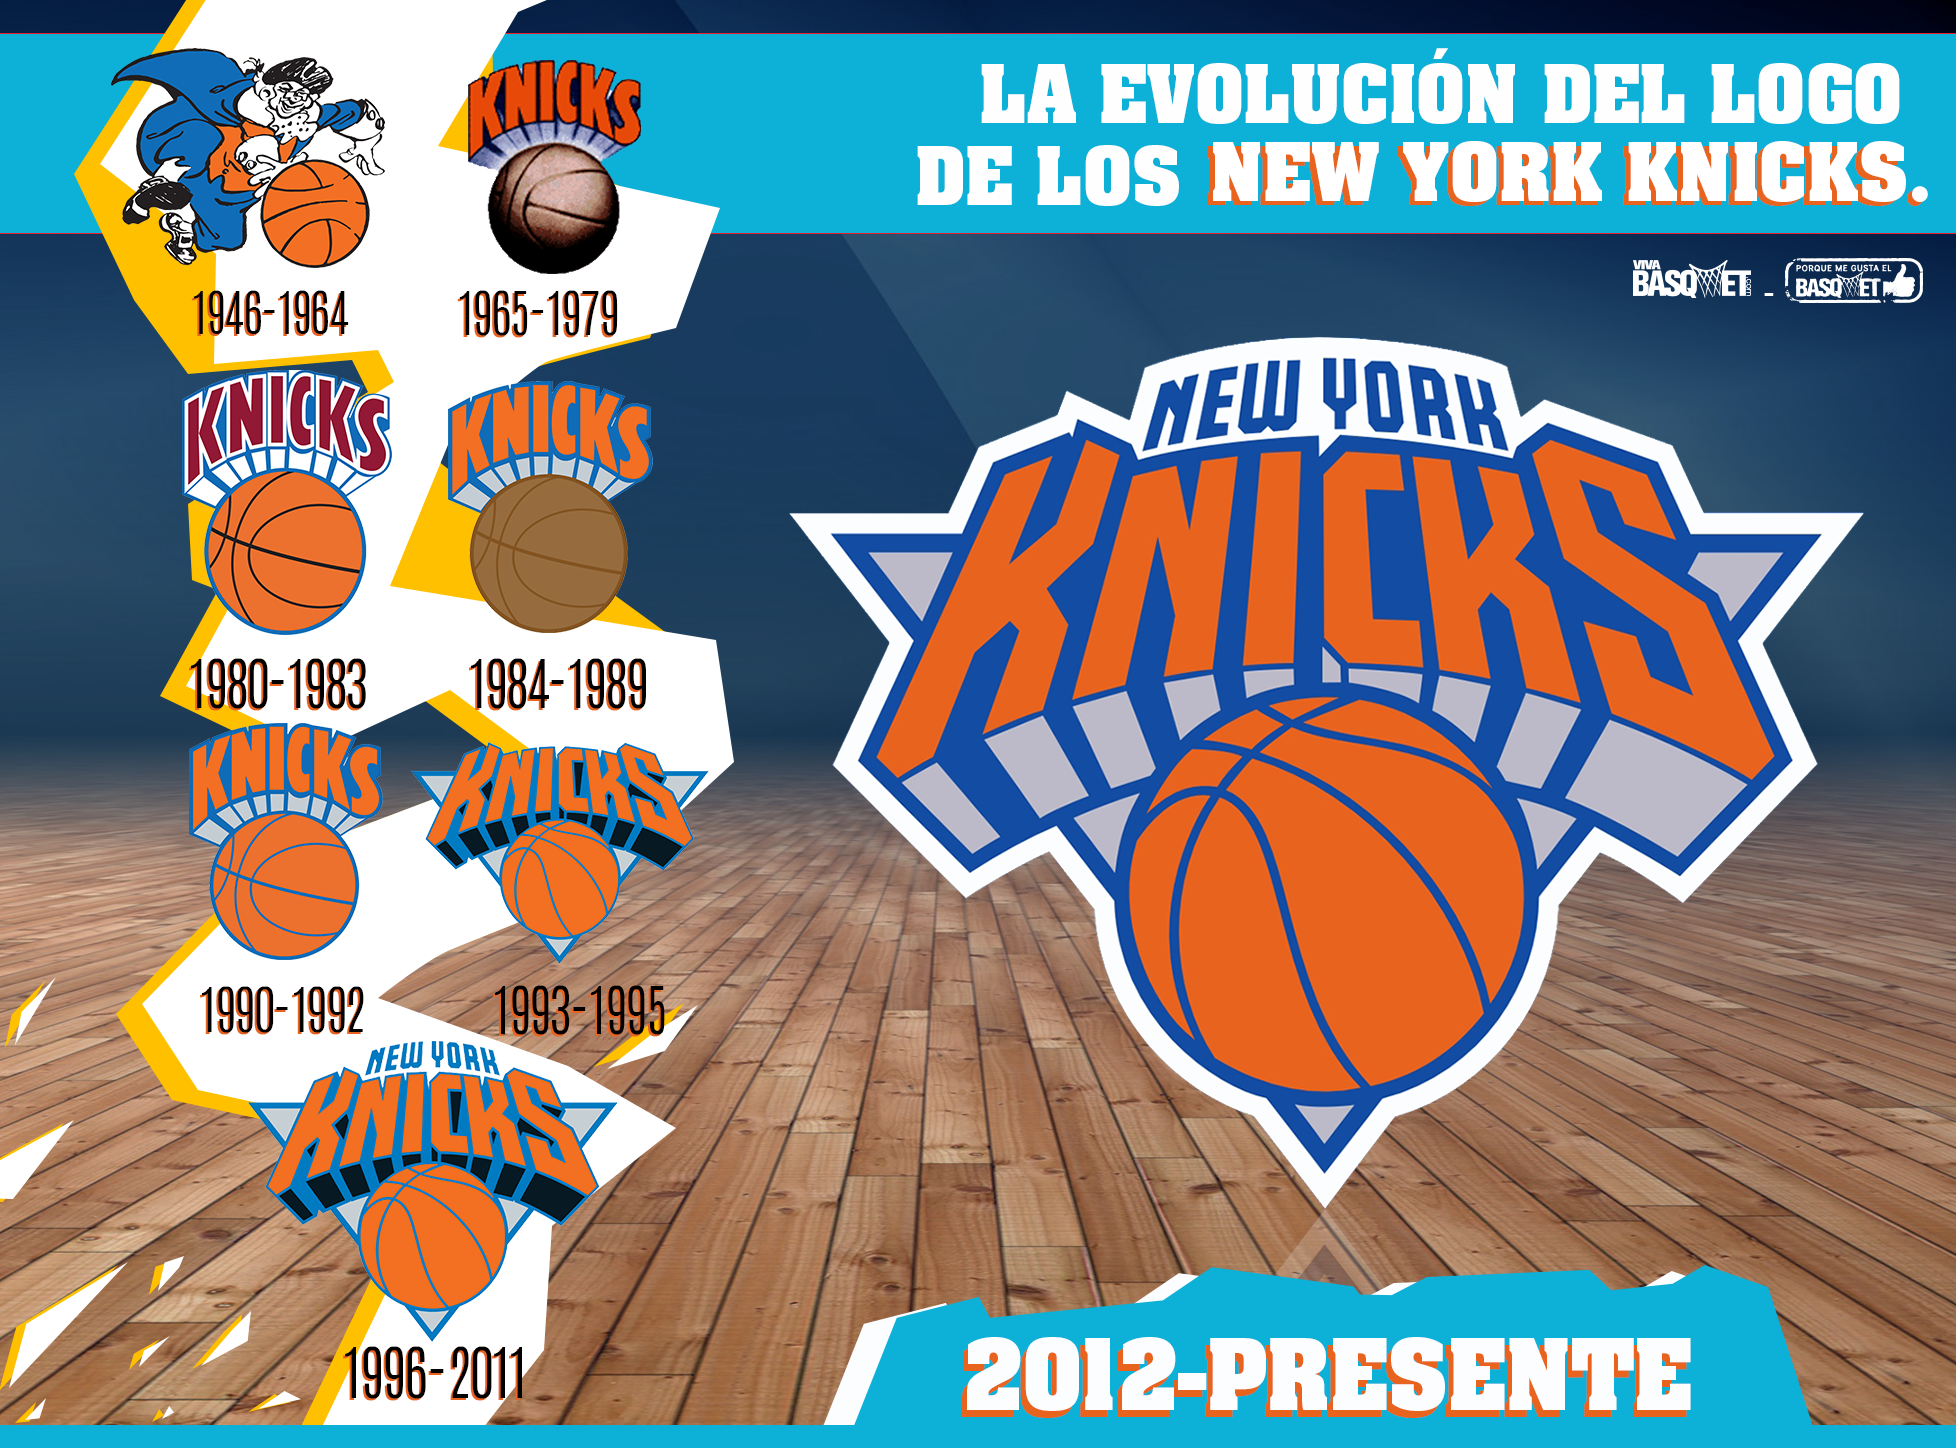 La evolución del logo de los New York Knicks por Viva Basquet.